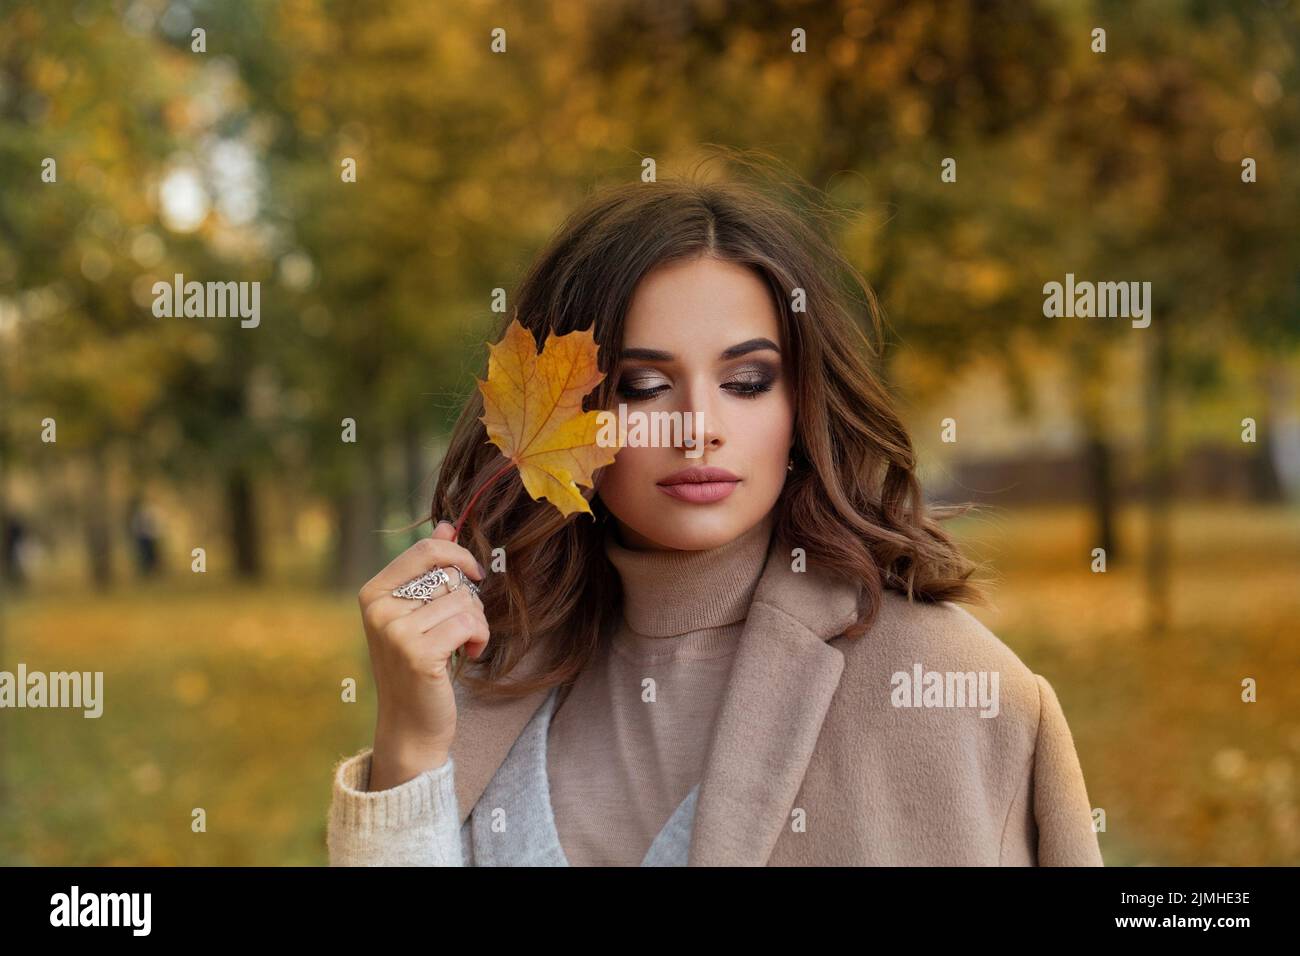 Retrato de mujer Atumn. Modelo hermoso sostiene el arce de otoño las hojas al aire libre Foto de stock